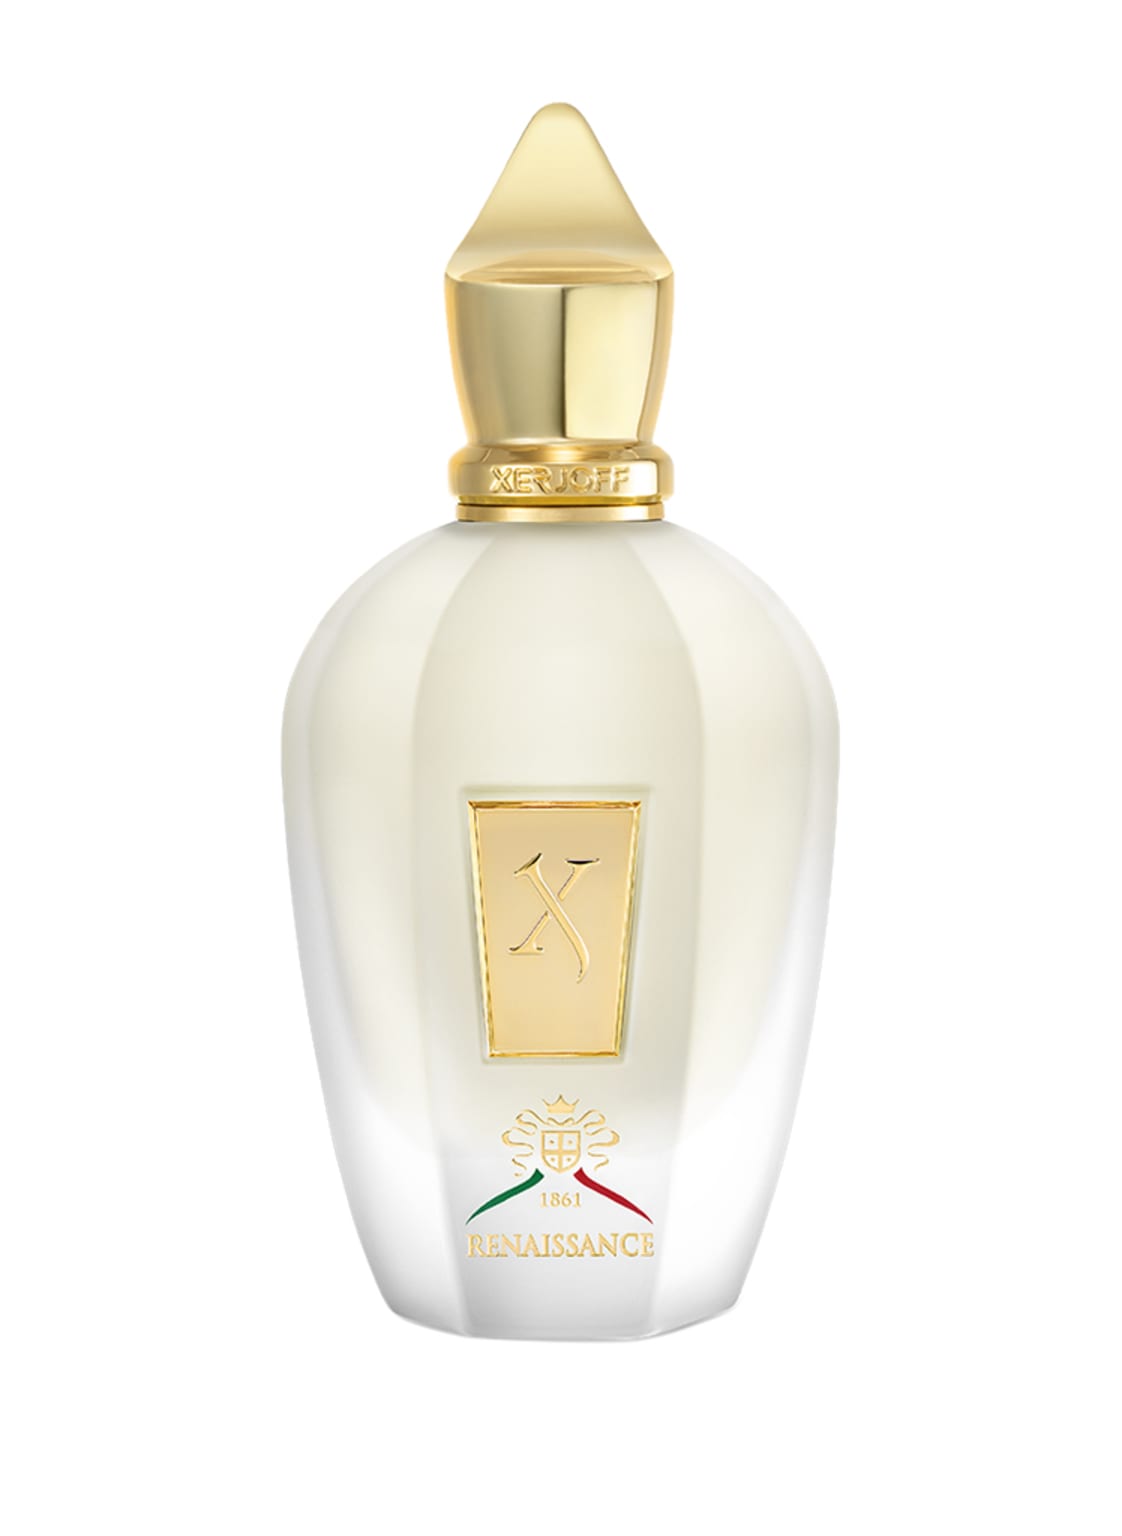 Xerjoff Renaissance Eau de Parfum 100 ml von XERJOFF